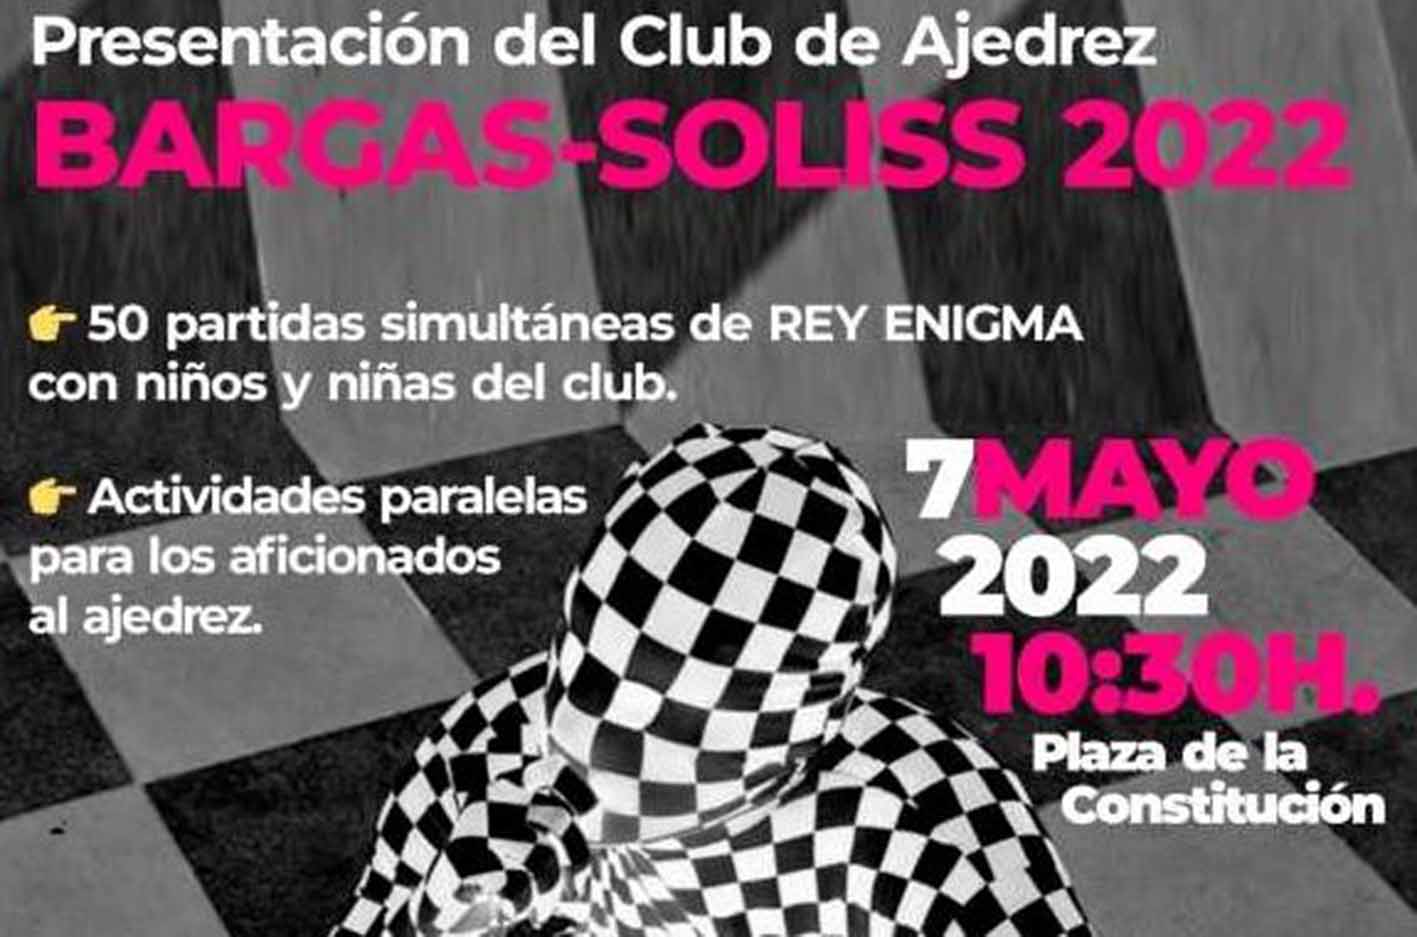 Presentación del Club de Ajedrez de Bargas-Soliss 2022.